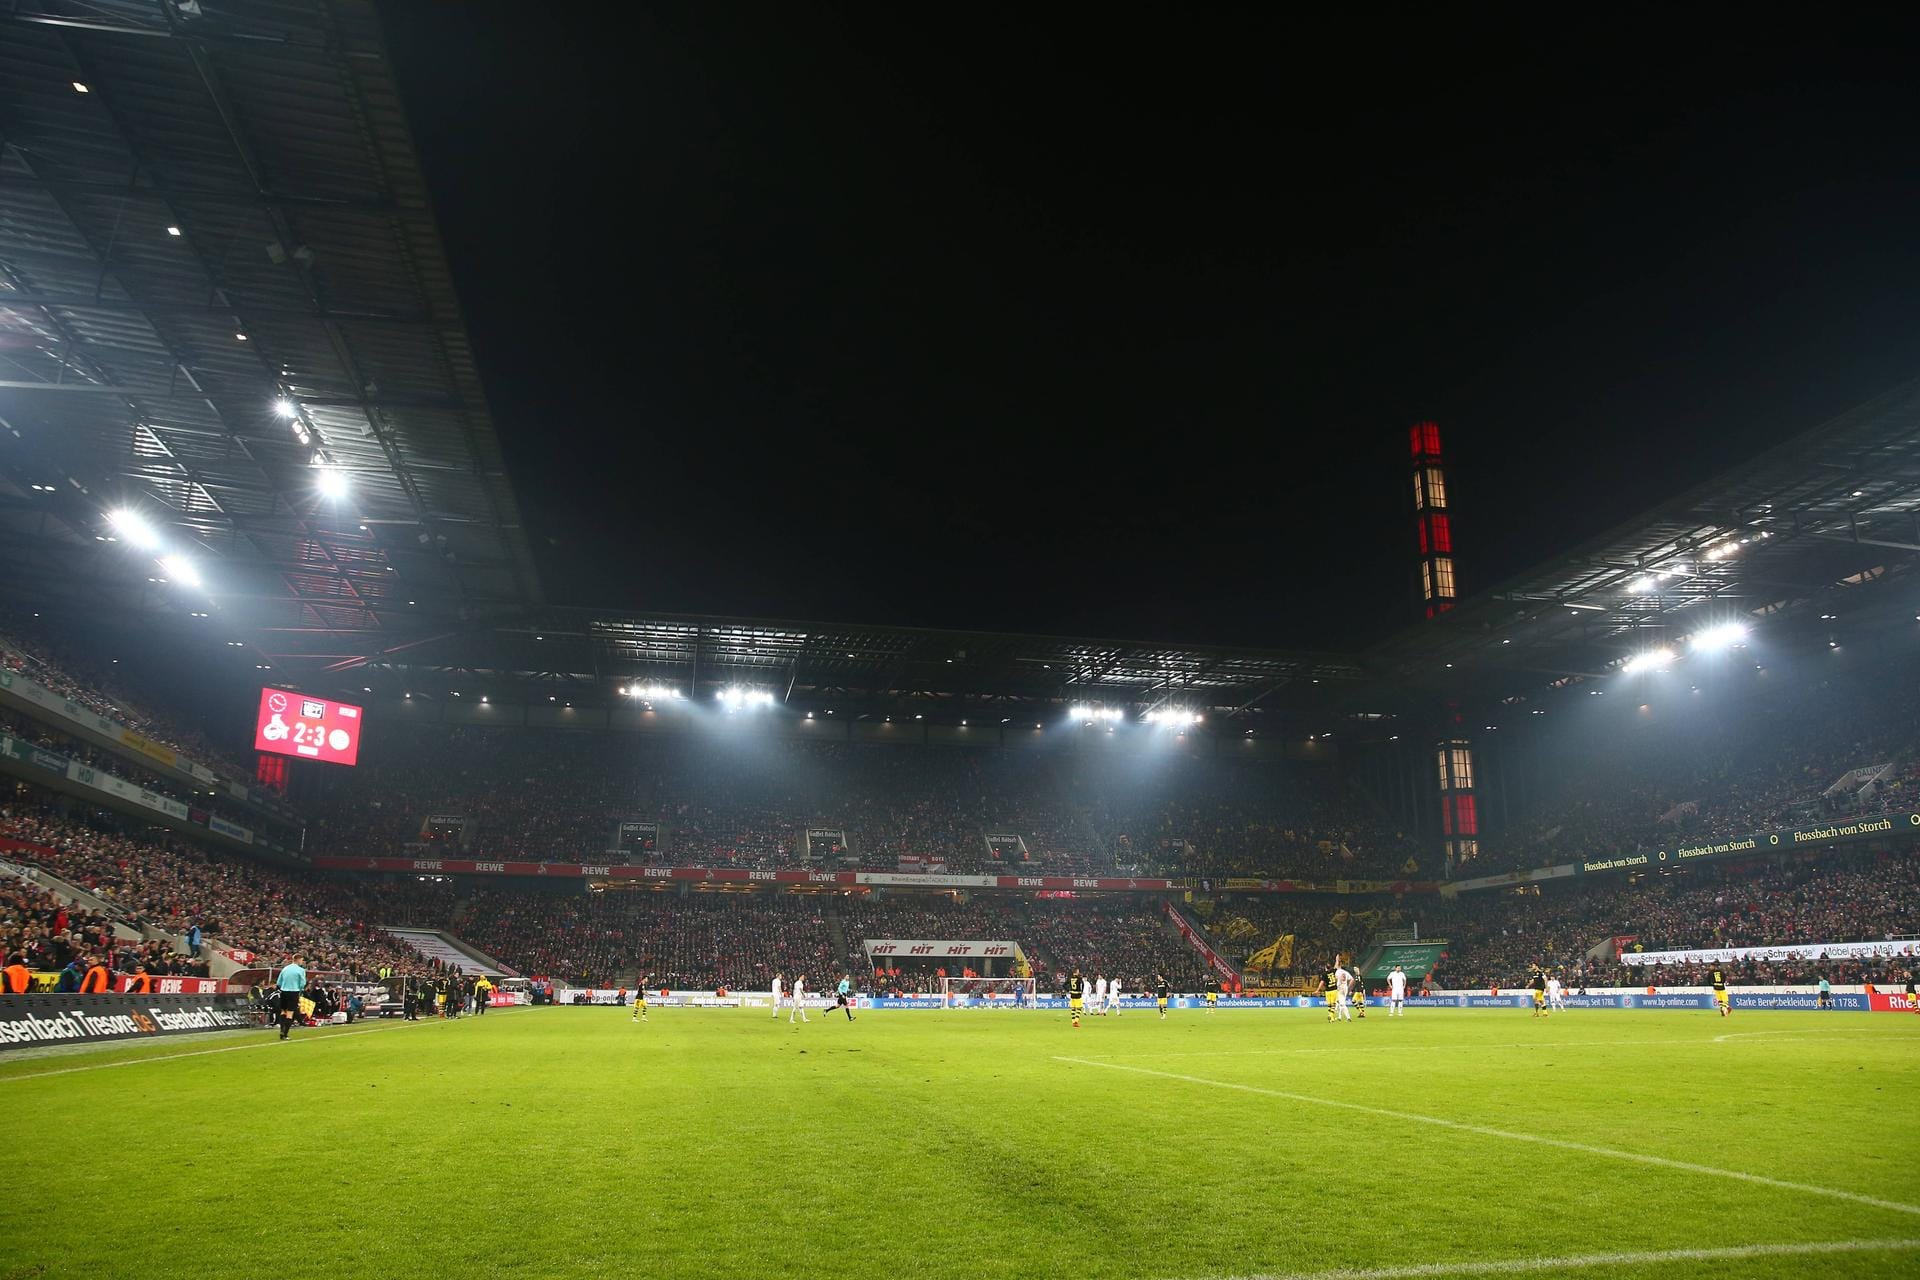 Das Rhein-Energie-Stadion in Köln (ca. 49.900).